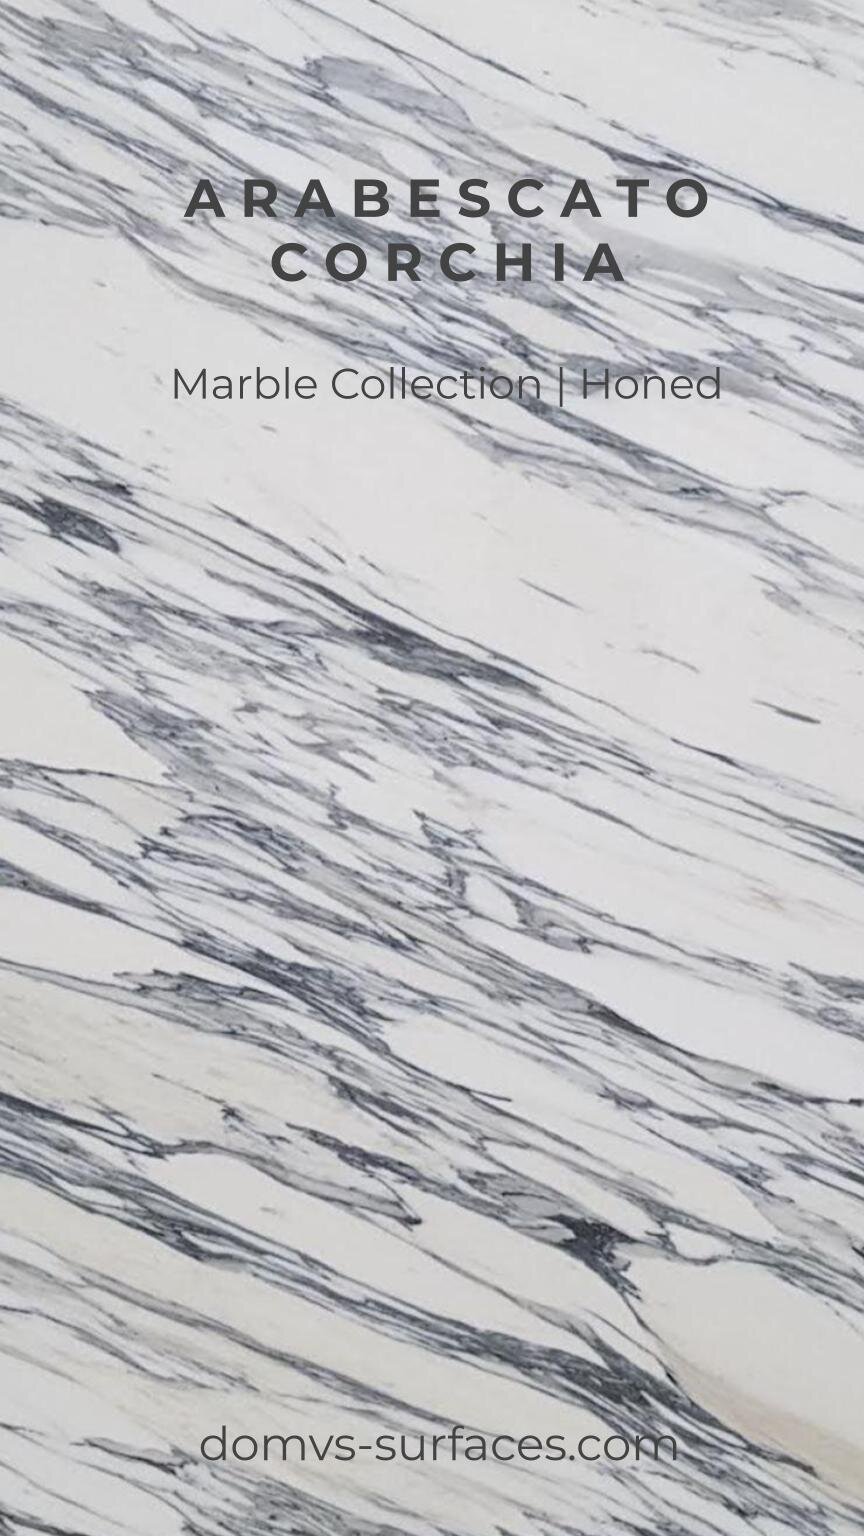 IGS Marble Arabescato Corchia.jpg